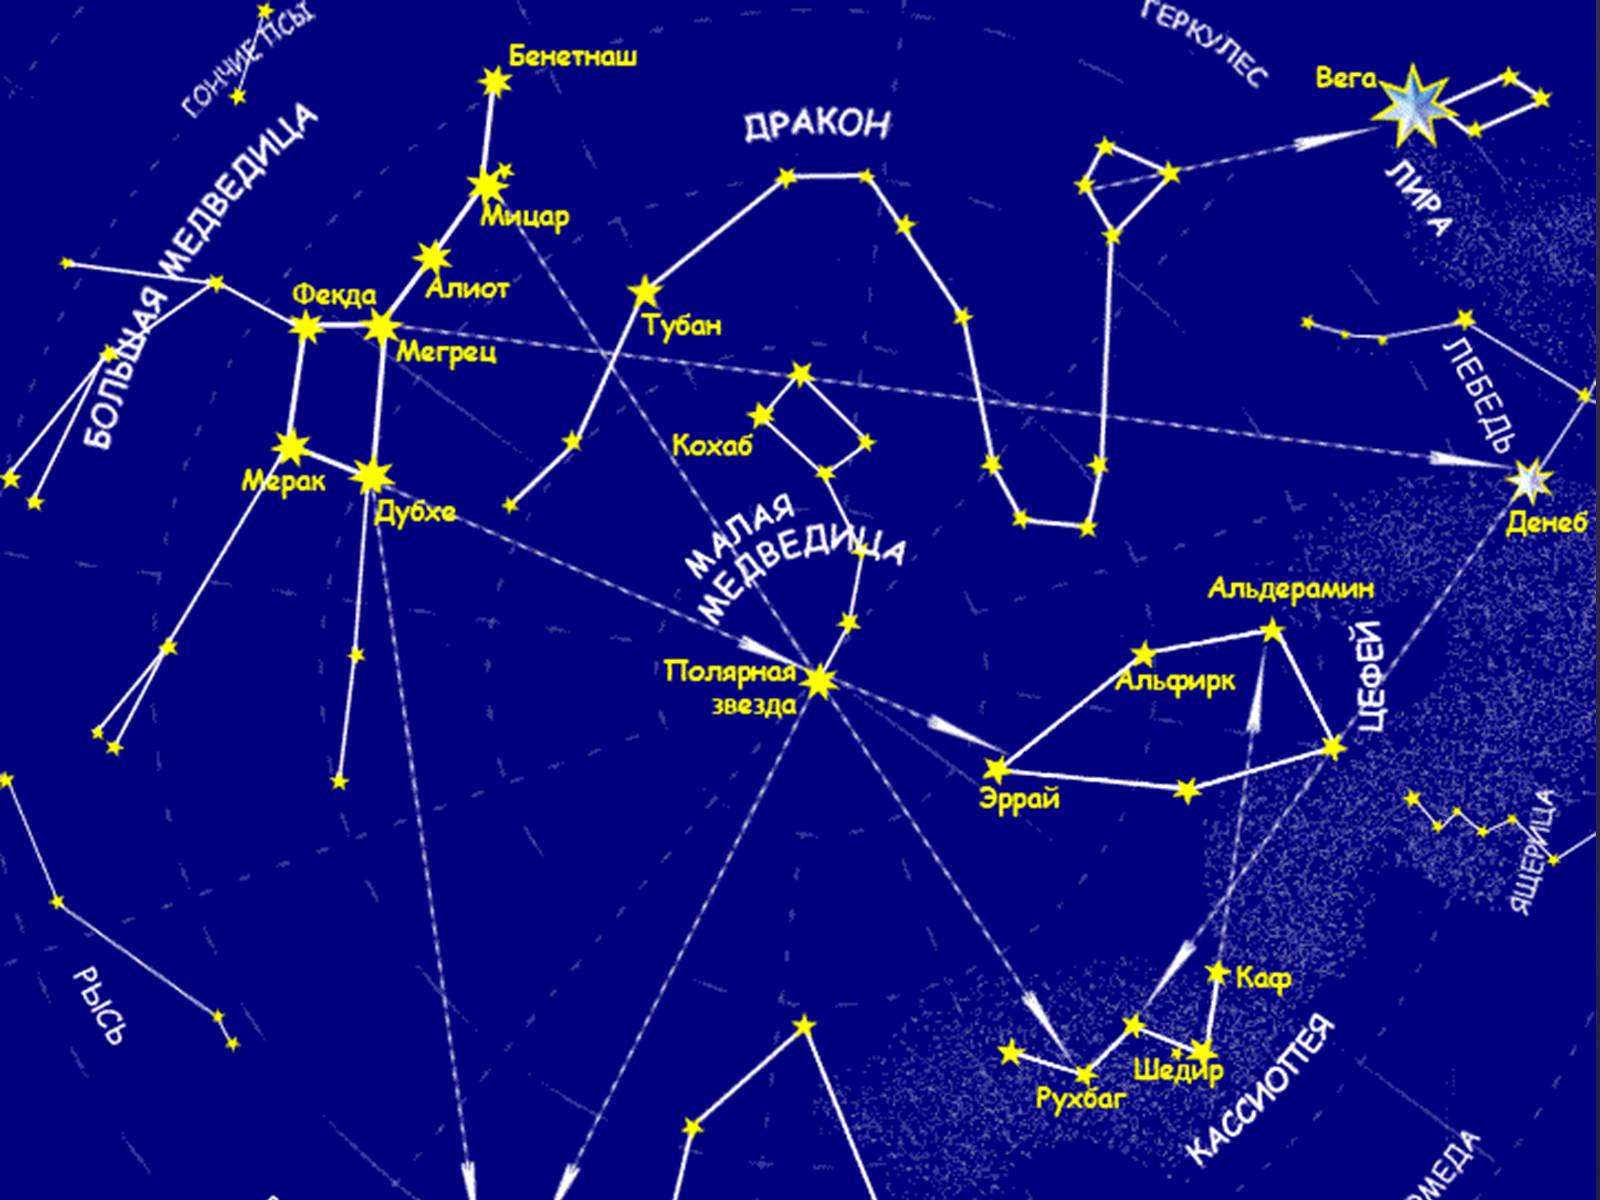 Созвездия северного полушария названия. Звездная карта созвездия. Карта звездного неба с названиями созвездий большая Медведица. Карта звёздного неба Северное полушарие большая Медведица. Околополярные незаходящие созвездия.